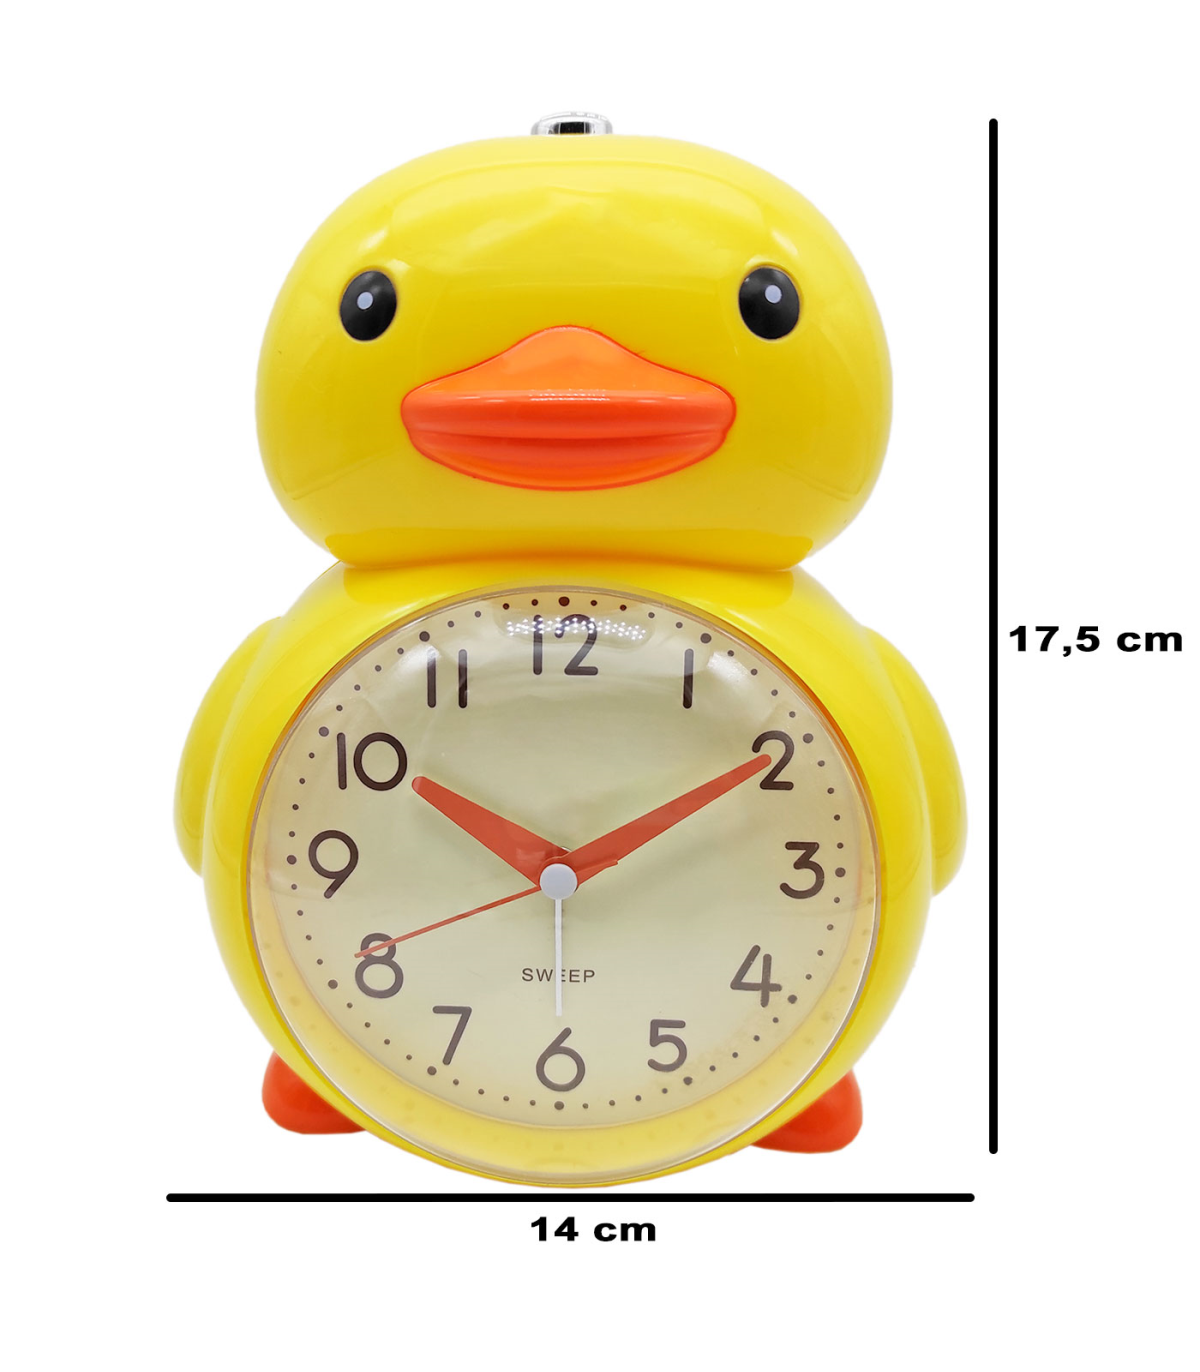 Tradineur - Reloj despertador analógico infantil de plástico